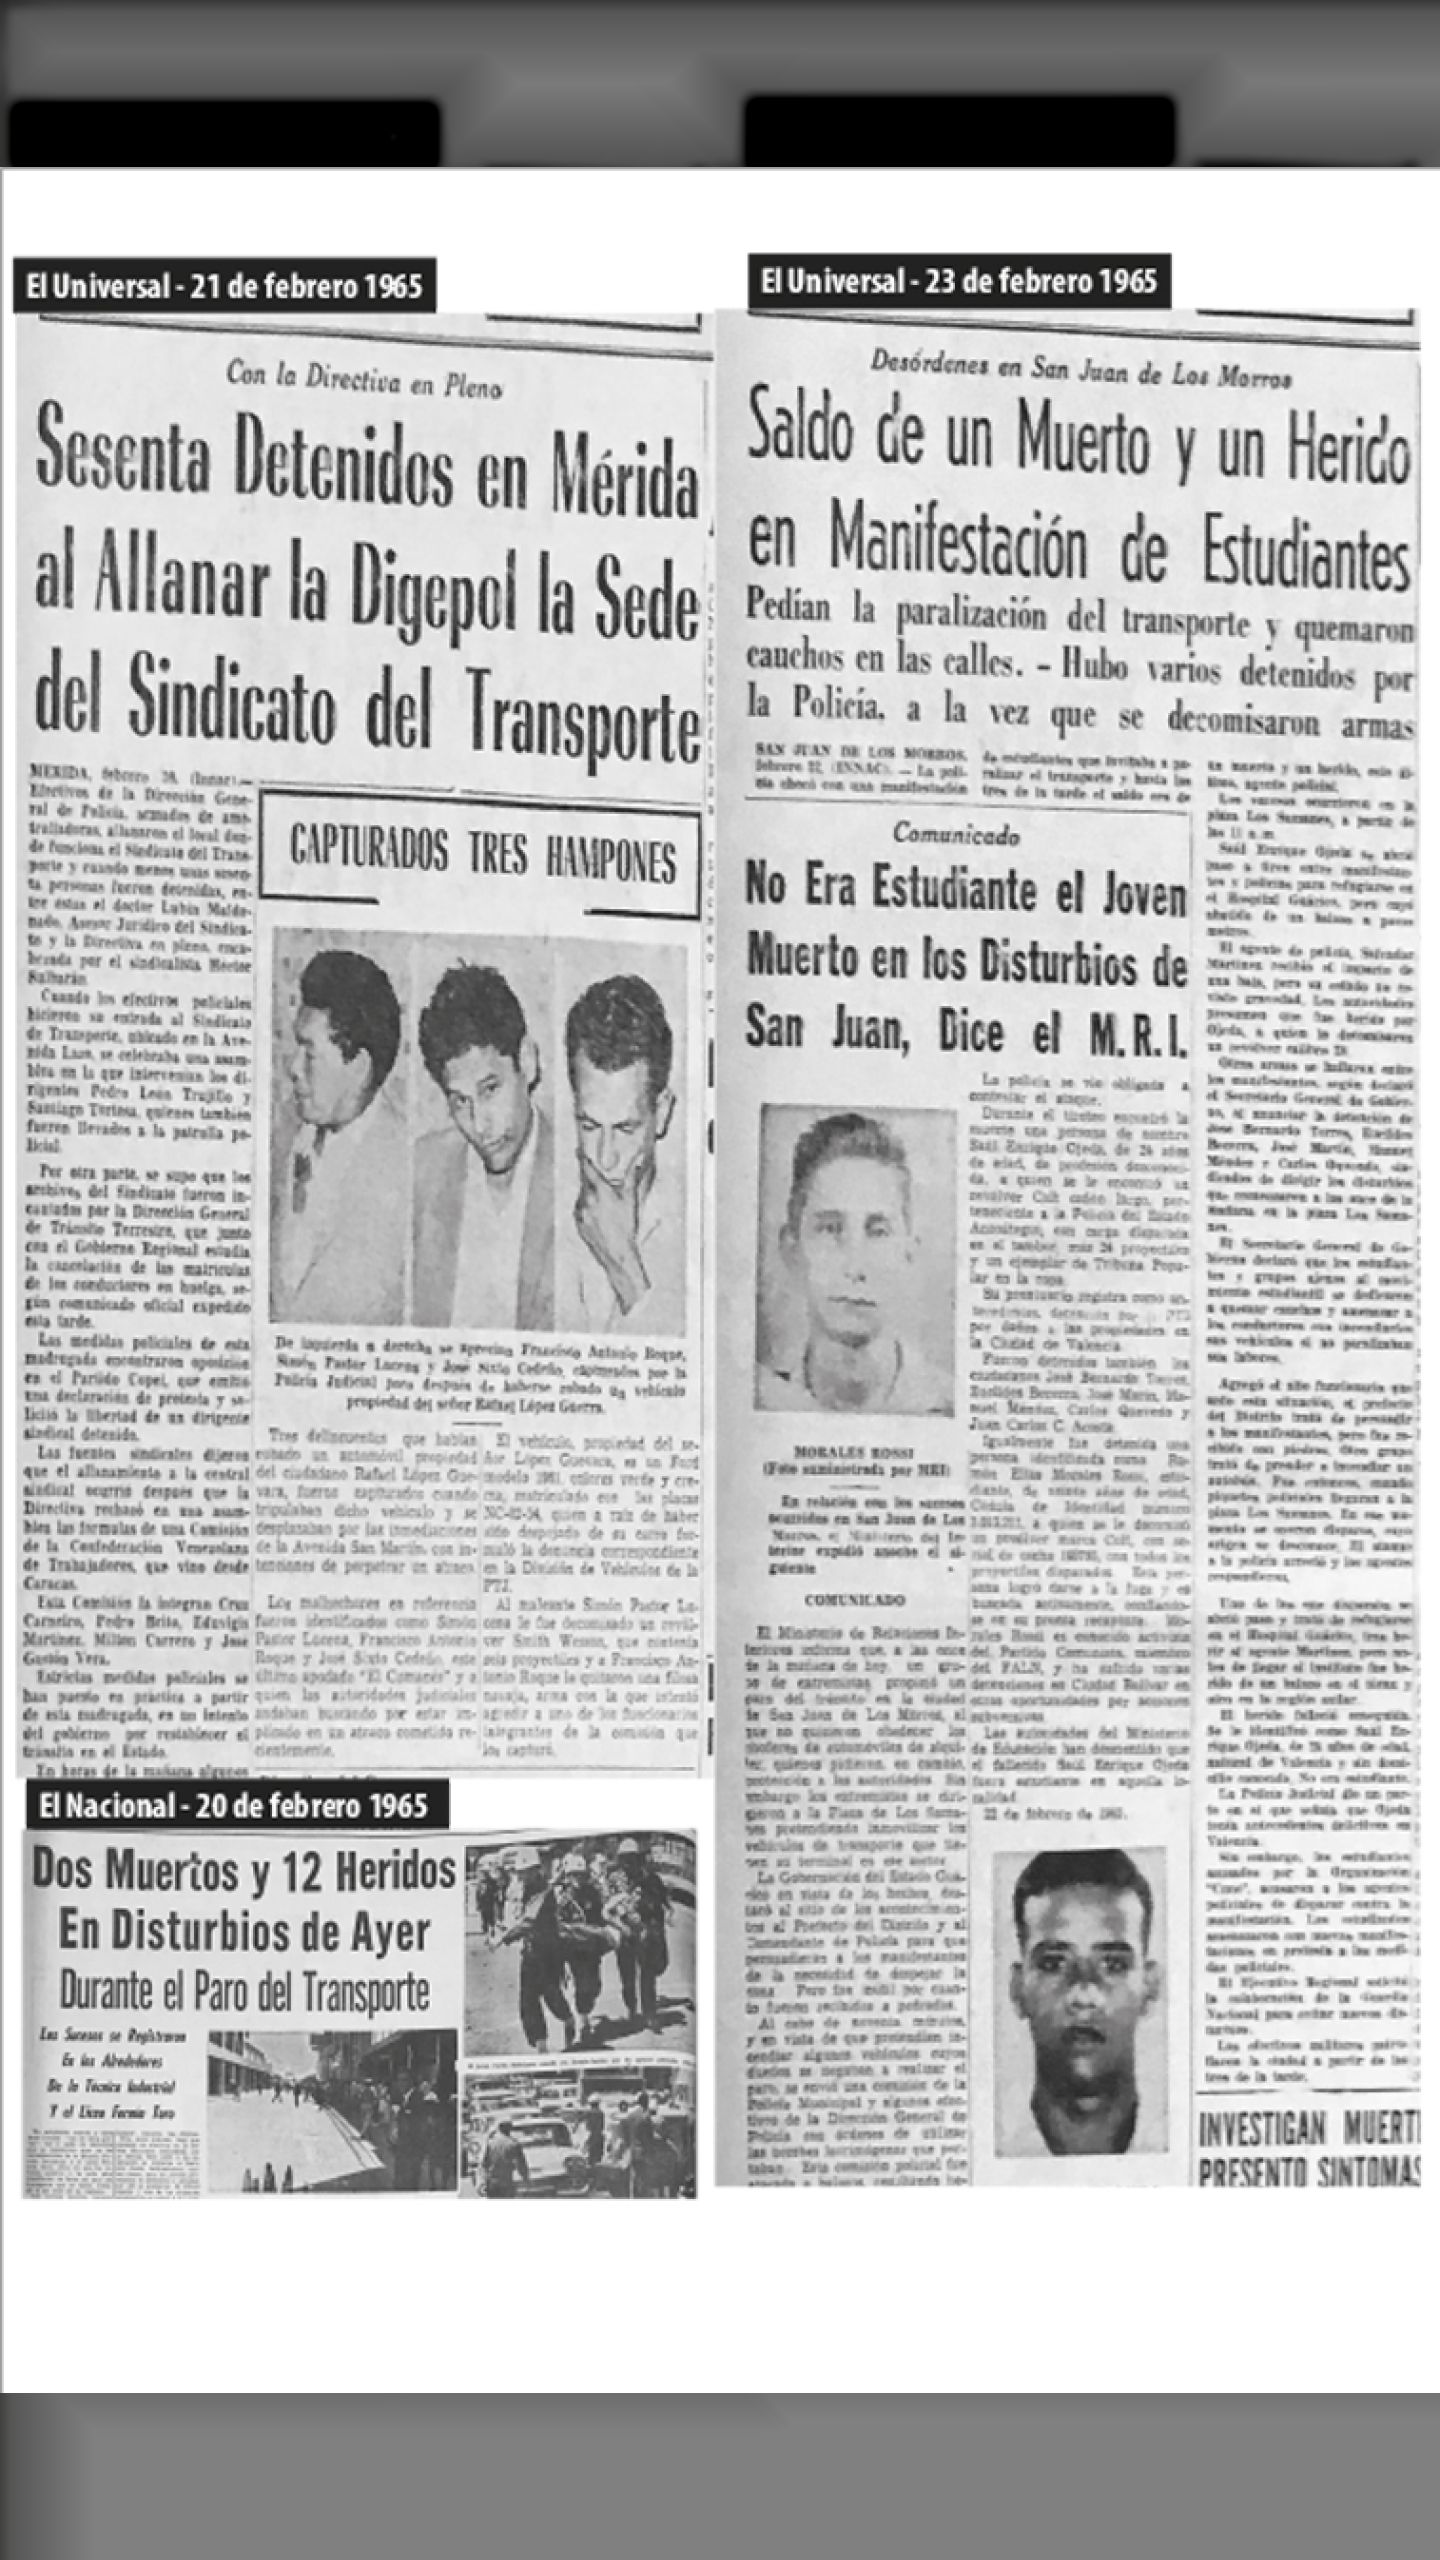 PARO DE TRANSPORTE (febrero 1965)